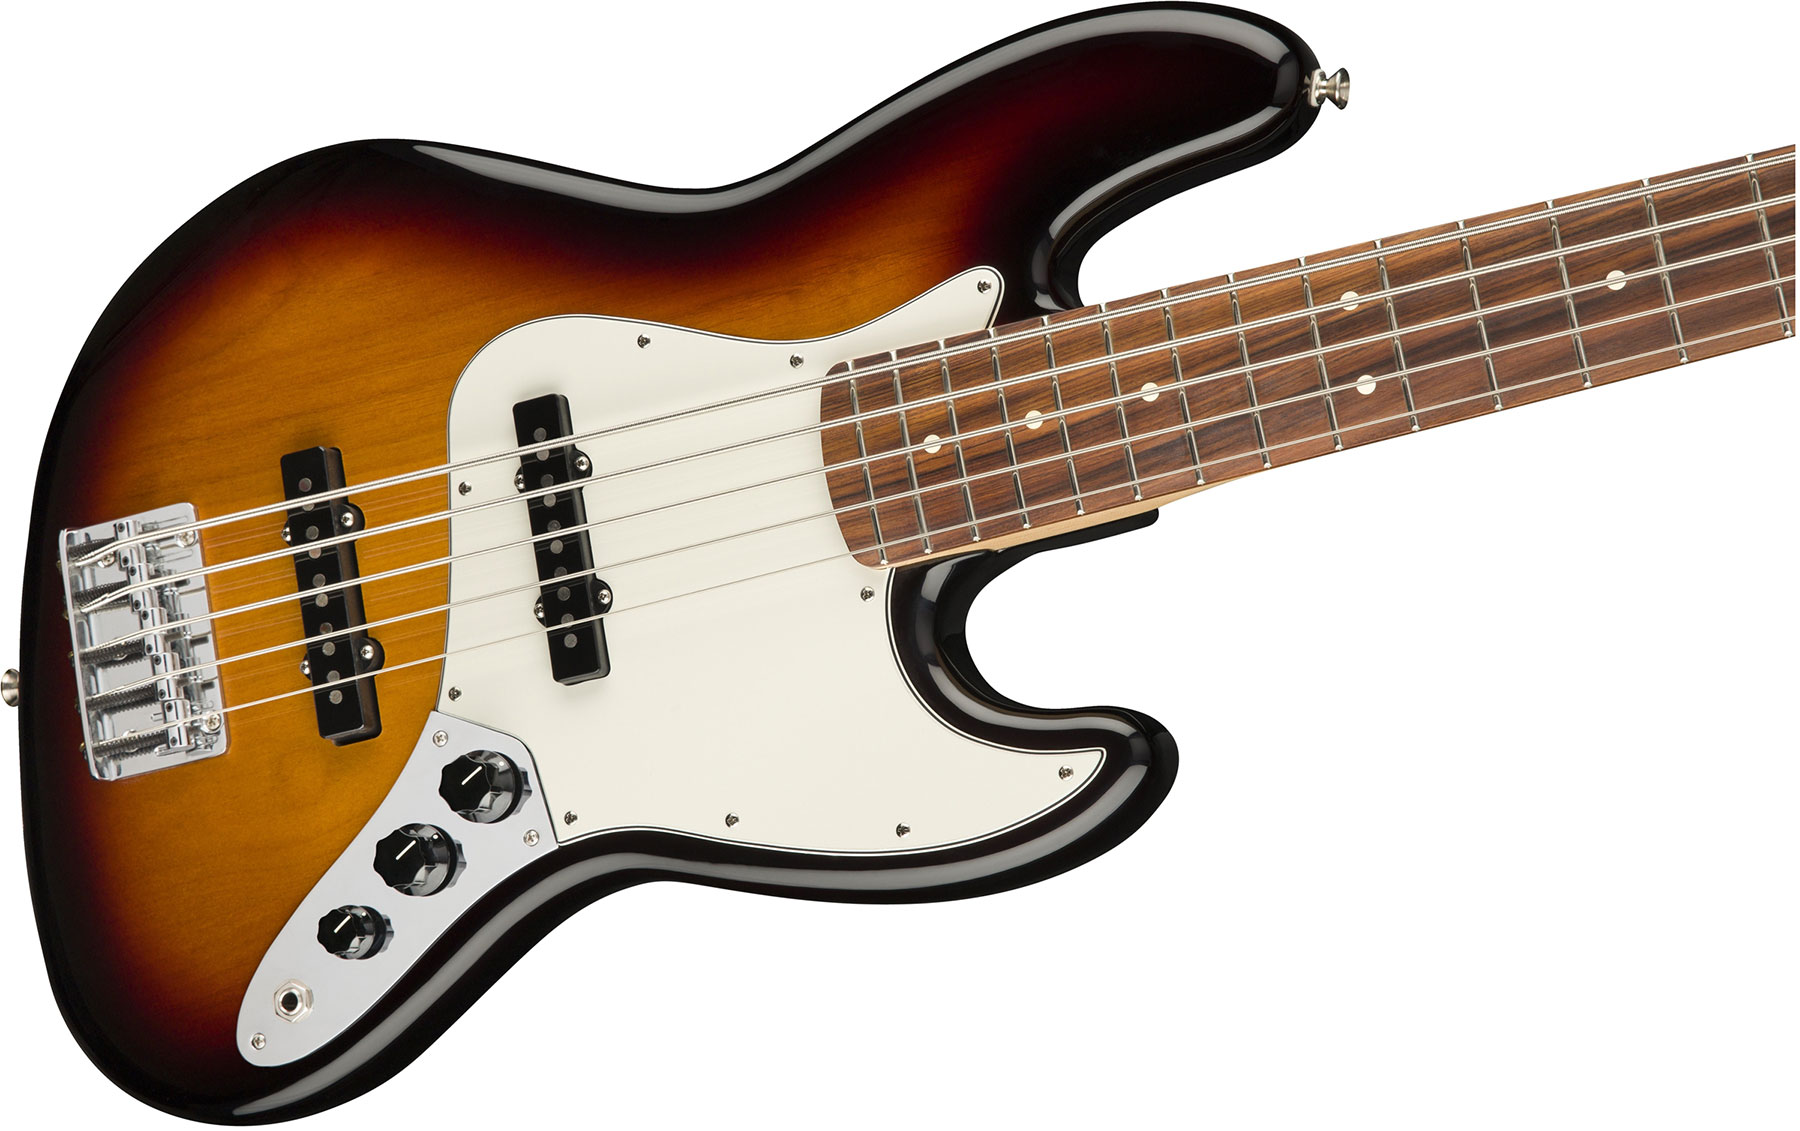 Fender Jazz Bass Player V 5-cordes Mex Pf - 3-color Sunburst - Bajo eléctrico de cuerpo sólido - Variation 2